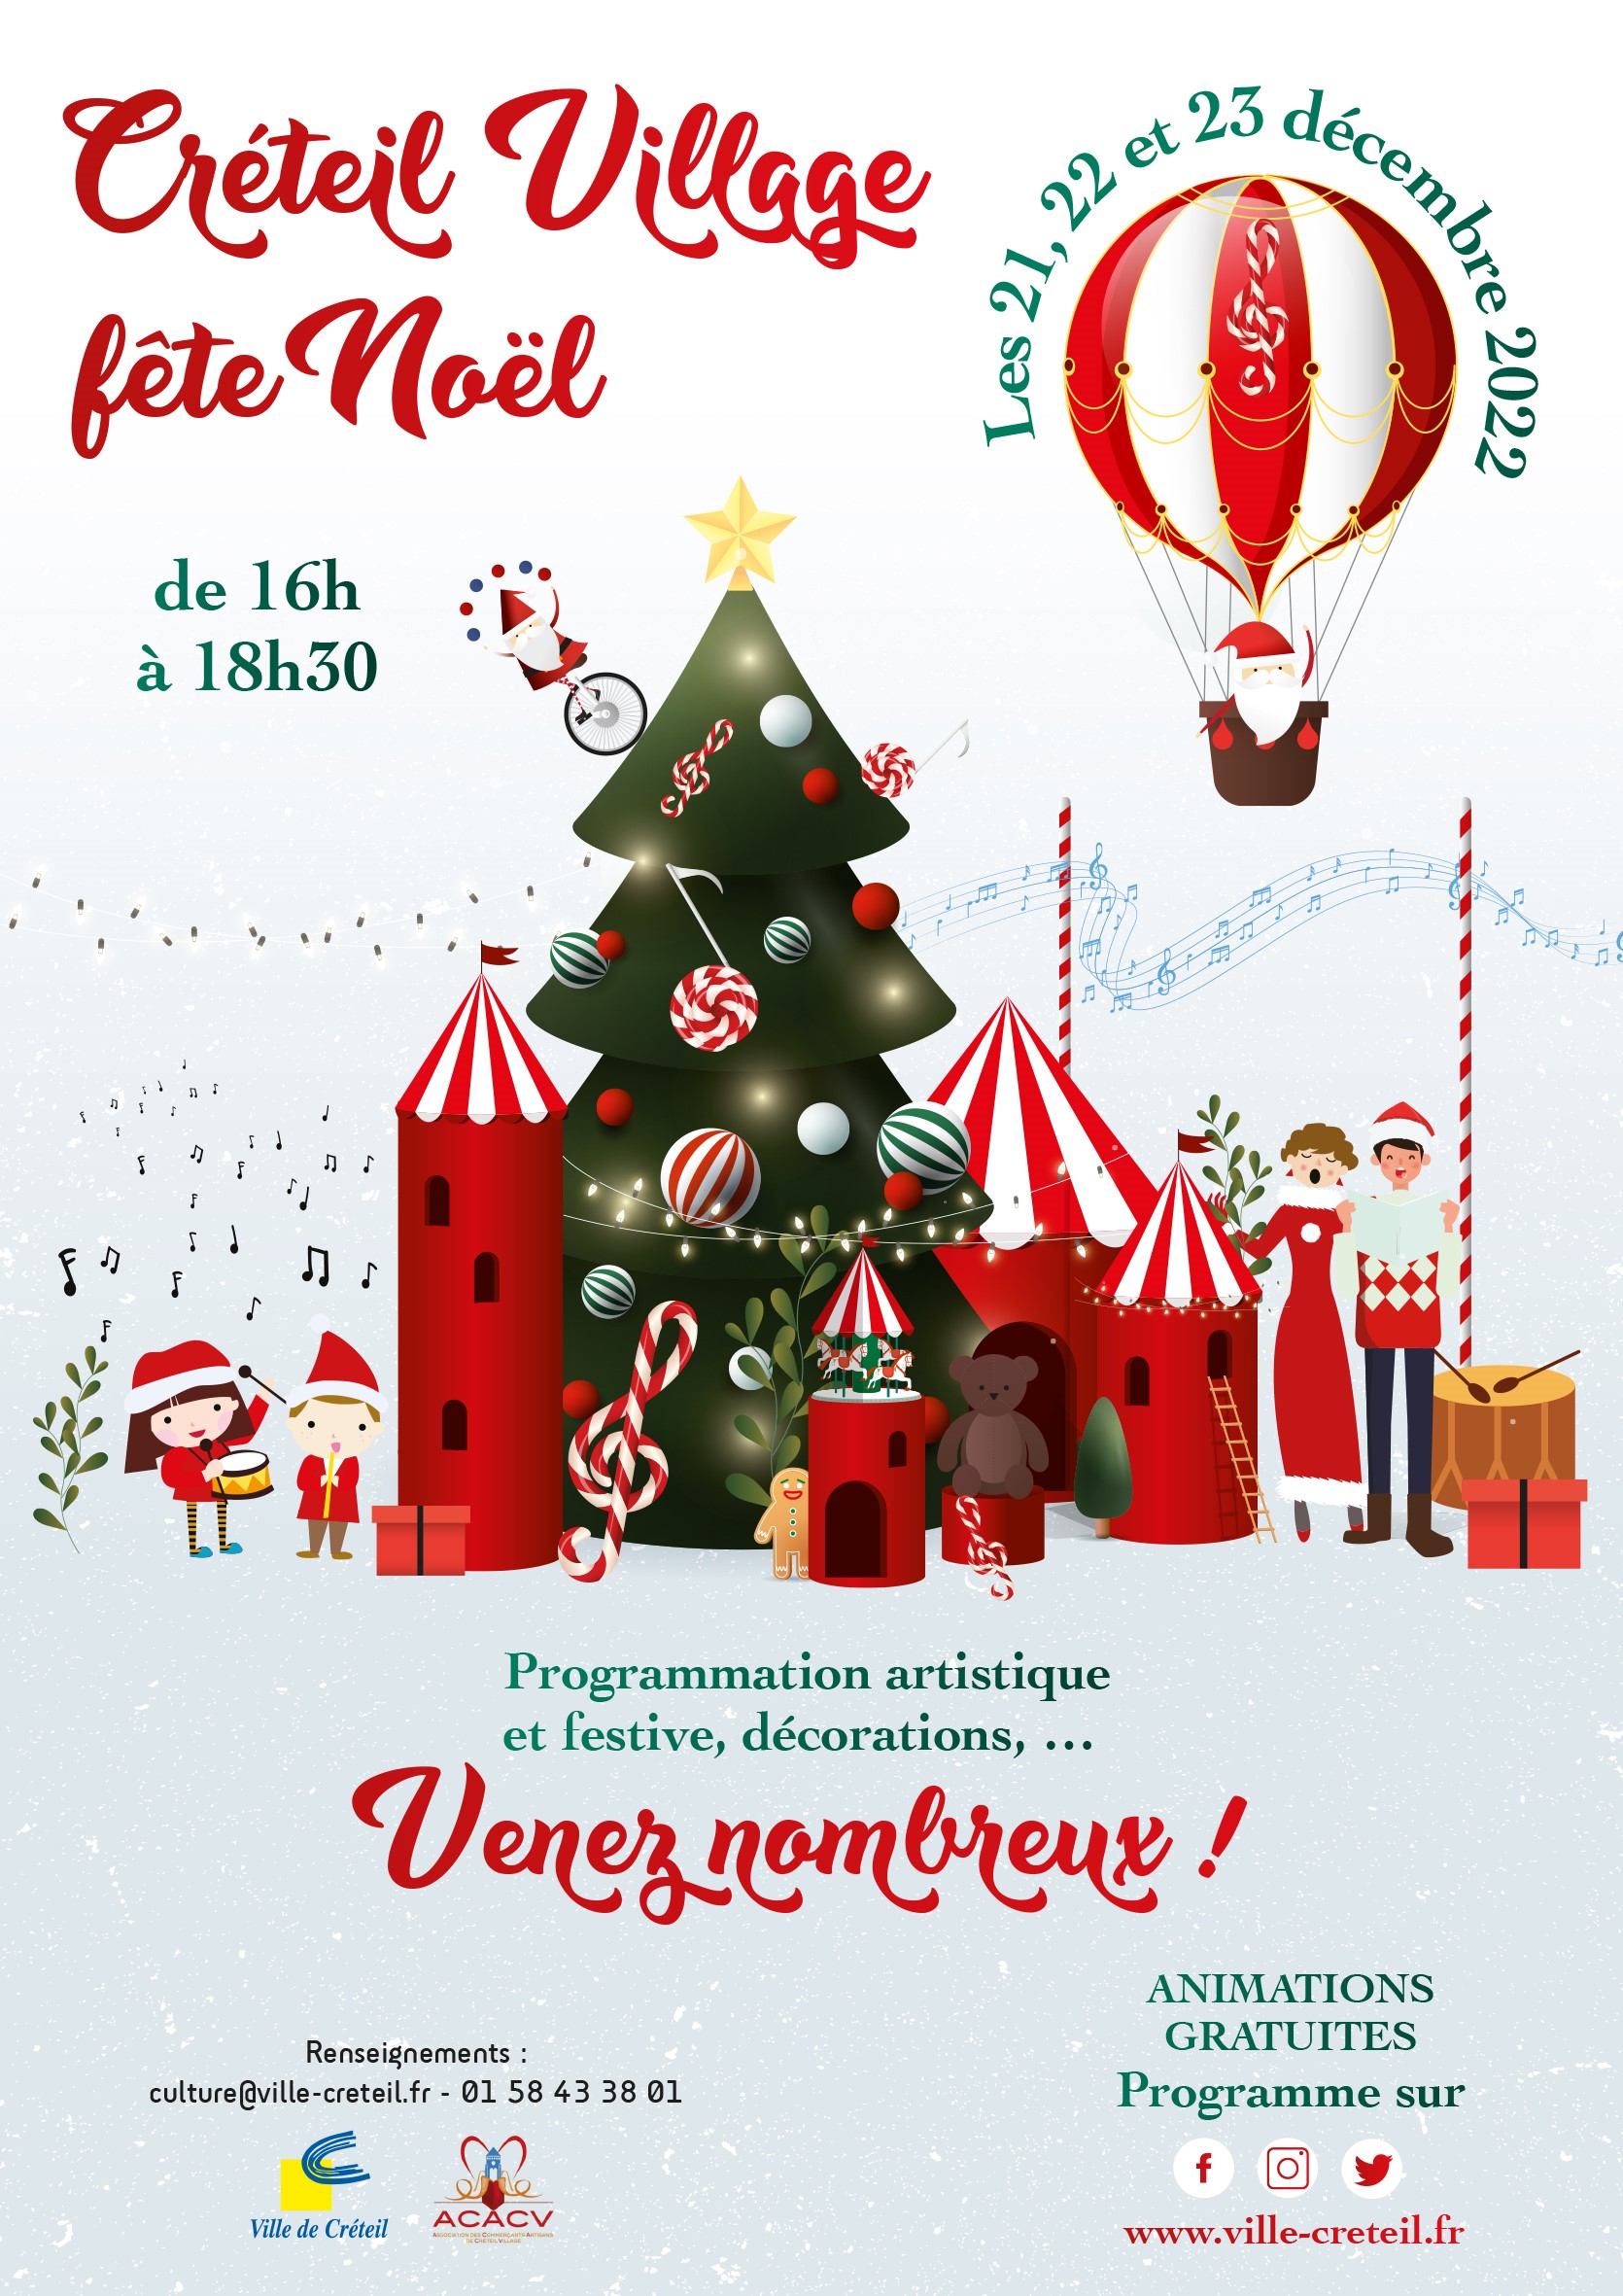 Créteil Village fête Noël les 21, 22 et 23 décembre 2022